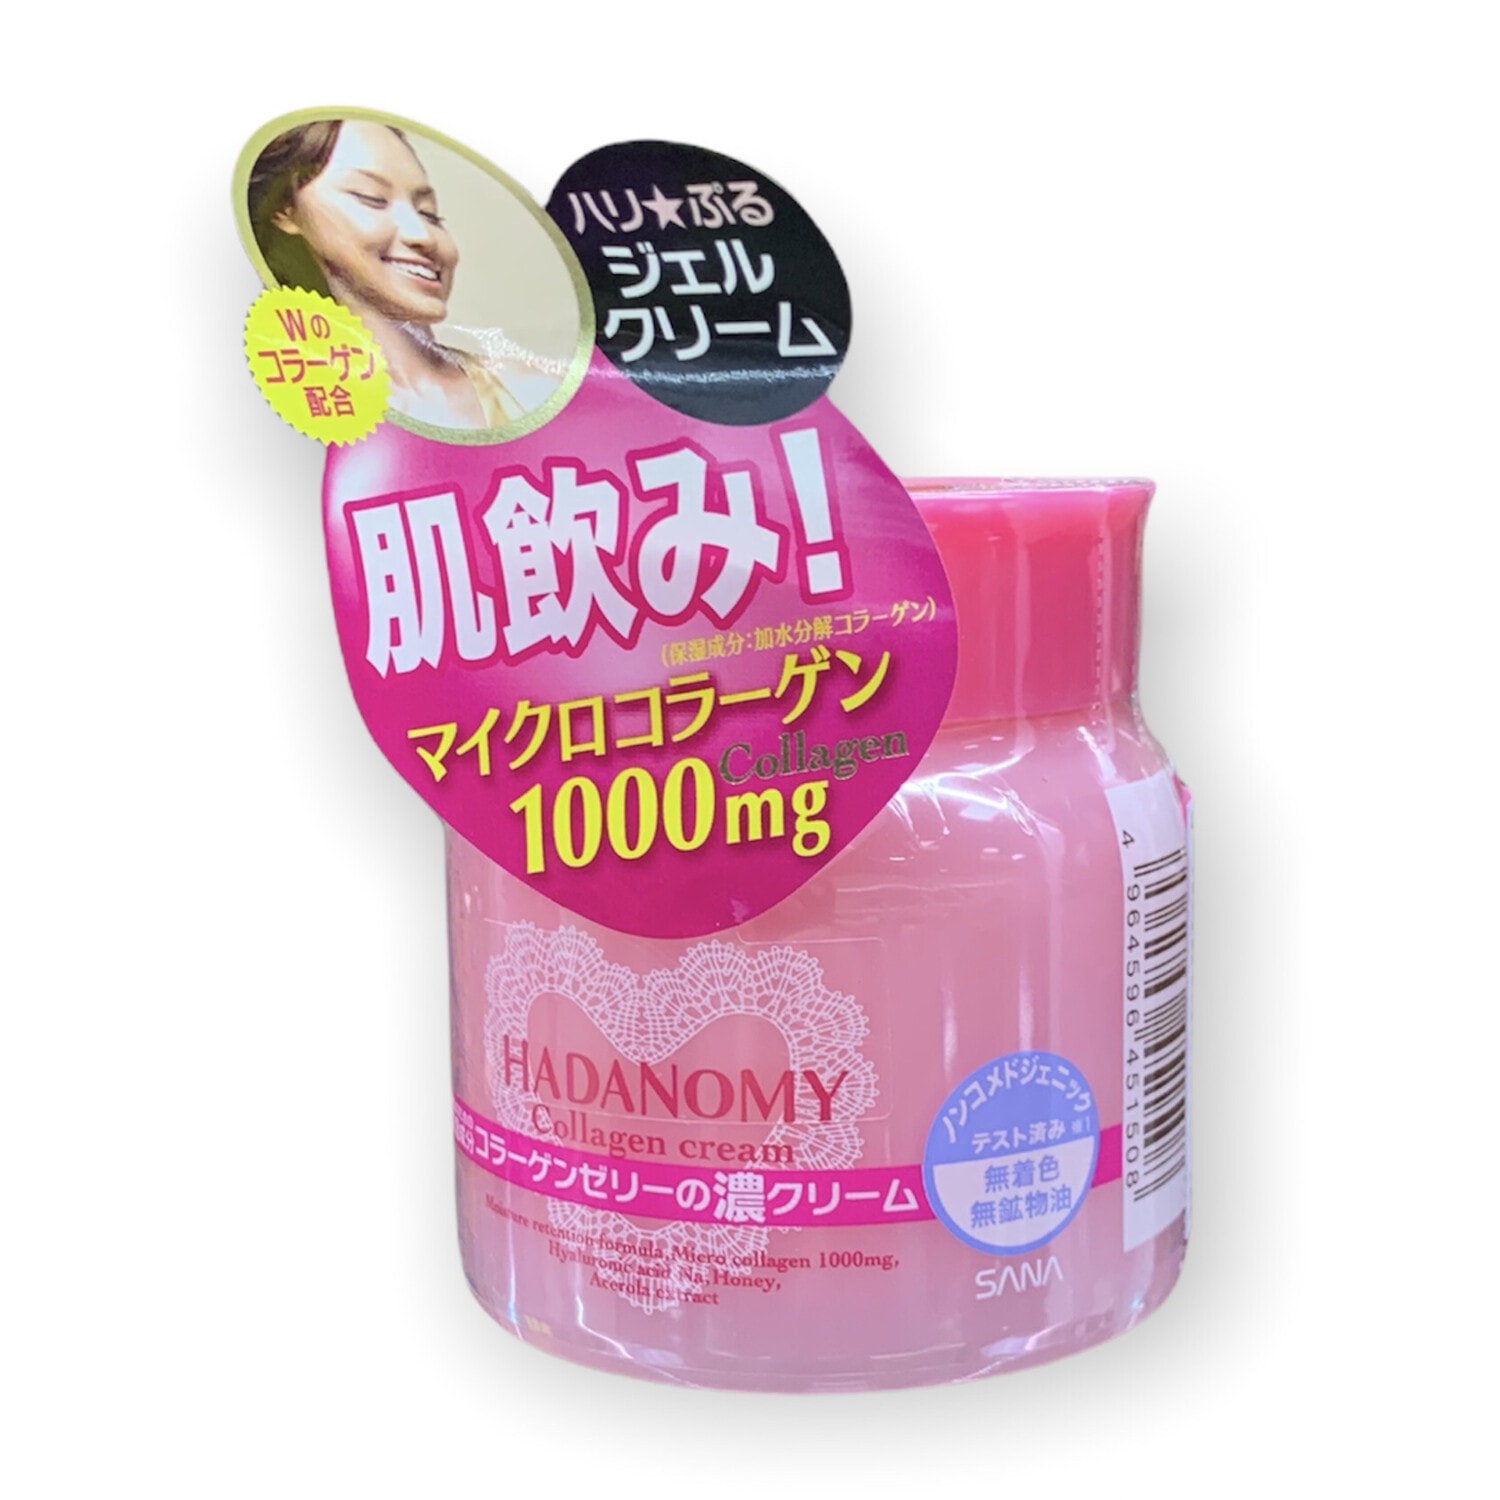 Sana Hadanomy  Cream Ночной крем для лица, с коллагеном и гиалуроновой кислотой, 100 г. / 451508 (4Т)